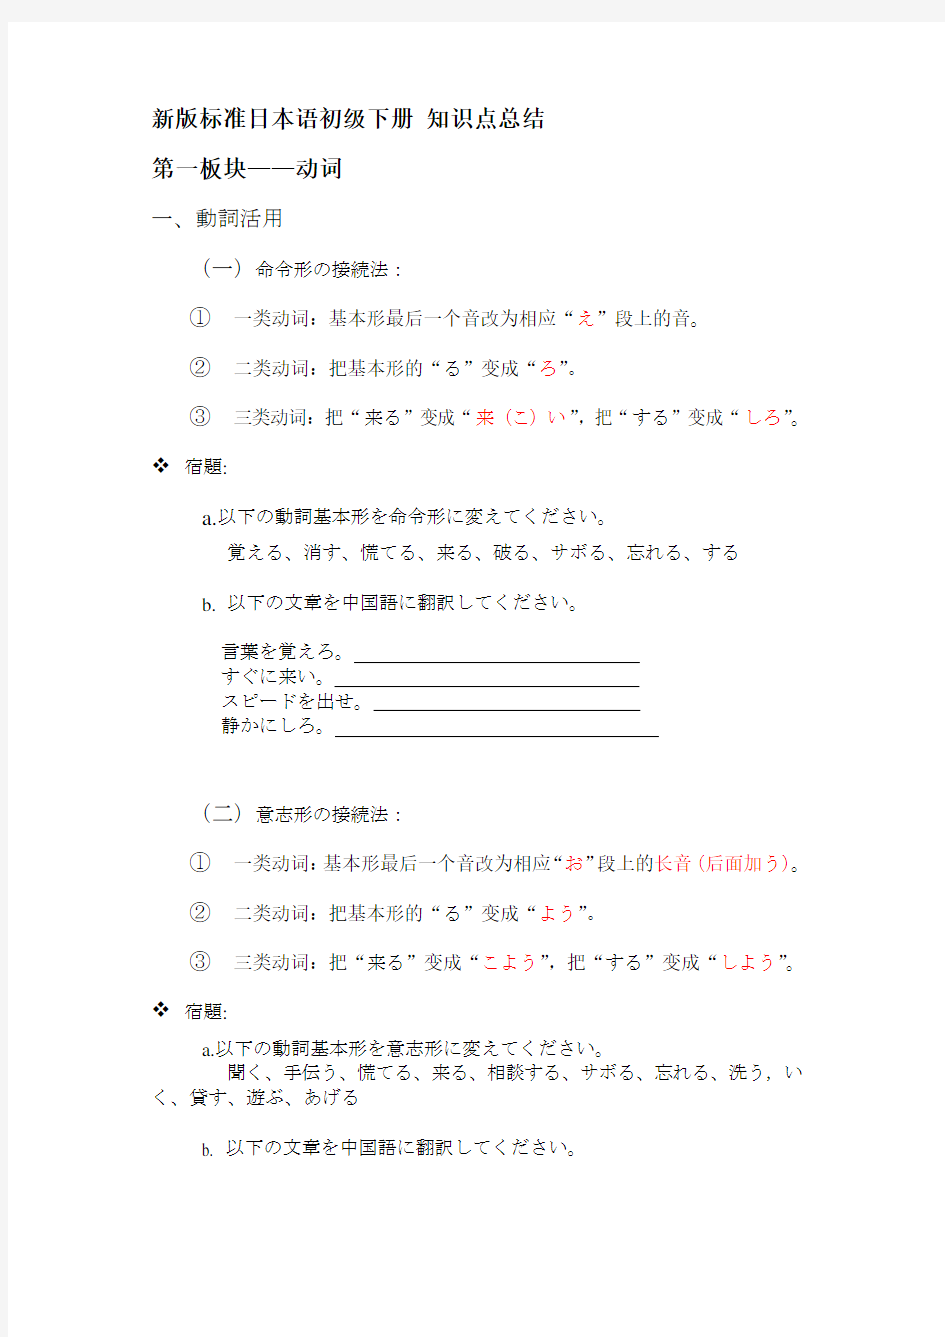 新版标准日本语初级下册 知识点总结(湖北文都日语整理)